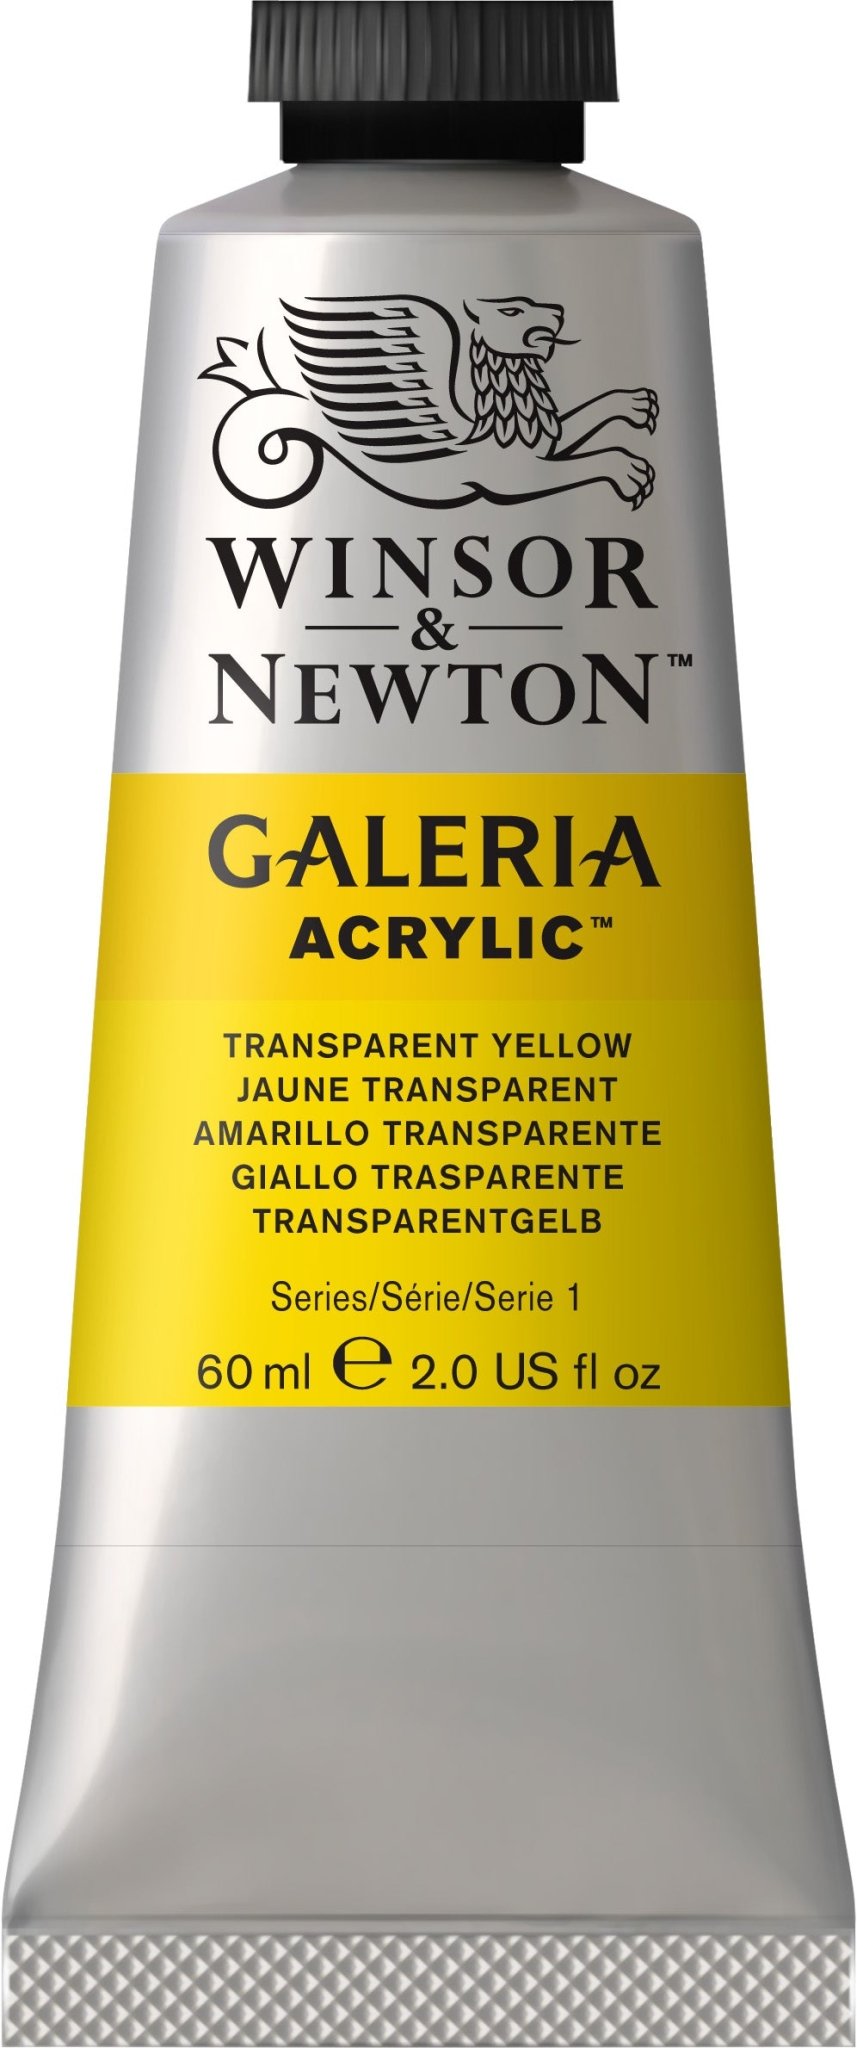 W & N Galeria Acrylic 60ml Transparent Yellow - theartshop.com.au